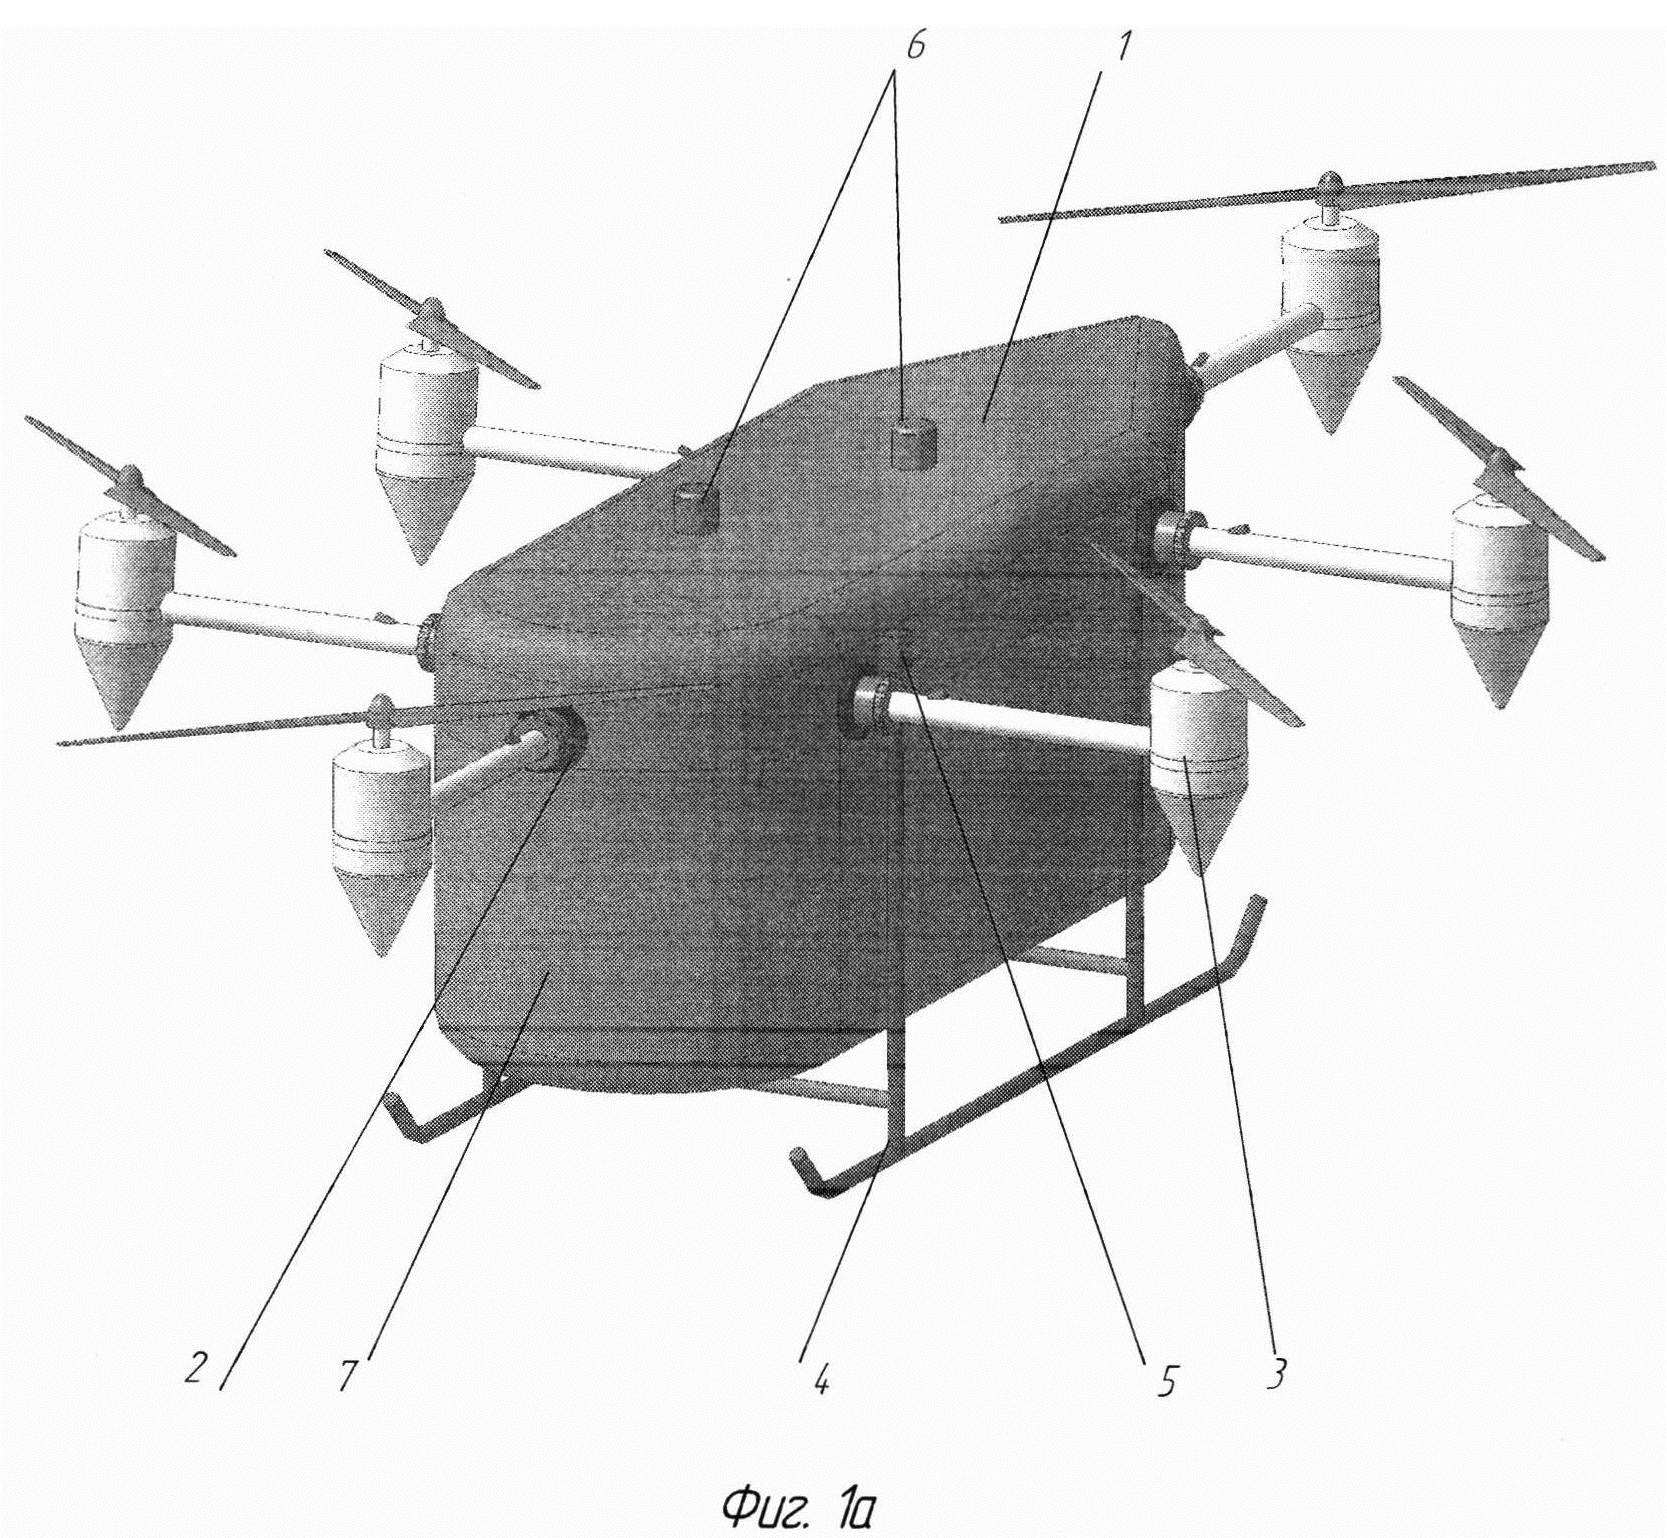 Модульный многовинтовой беспилотный летательный аппарат вертикального взлета и посадки и способ управления им